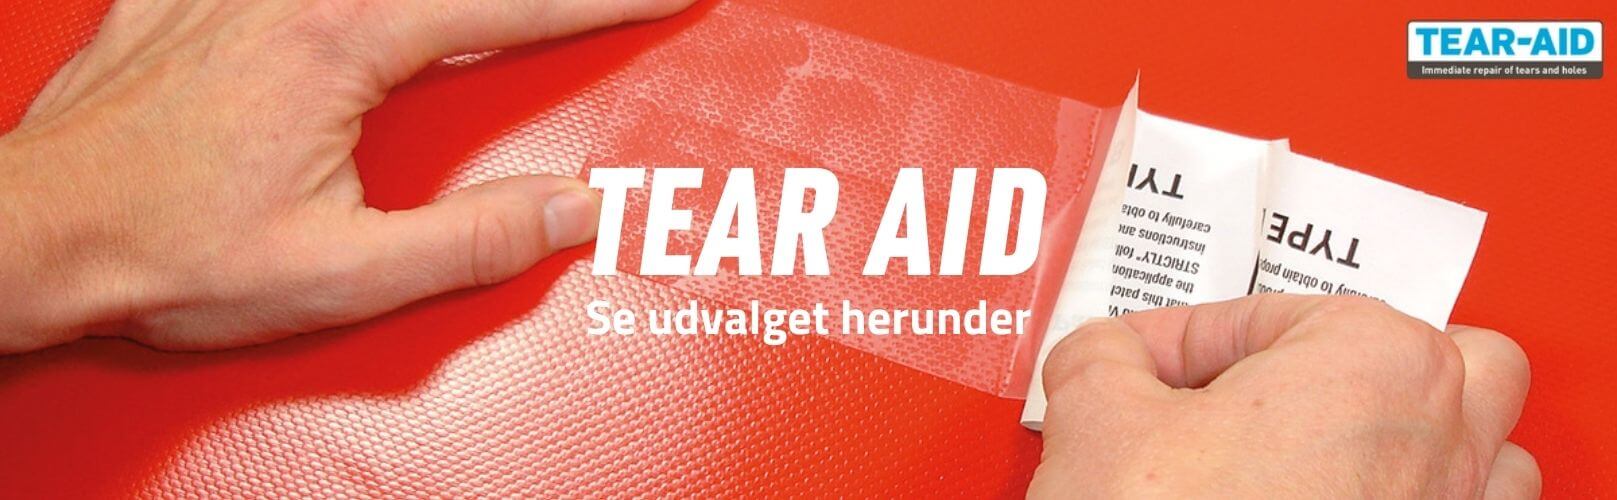 Tear-Aid brand banner